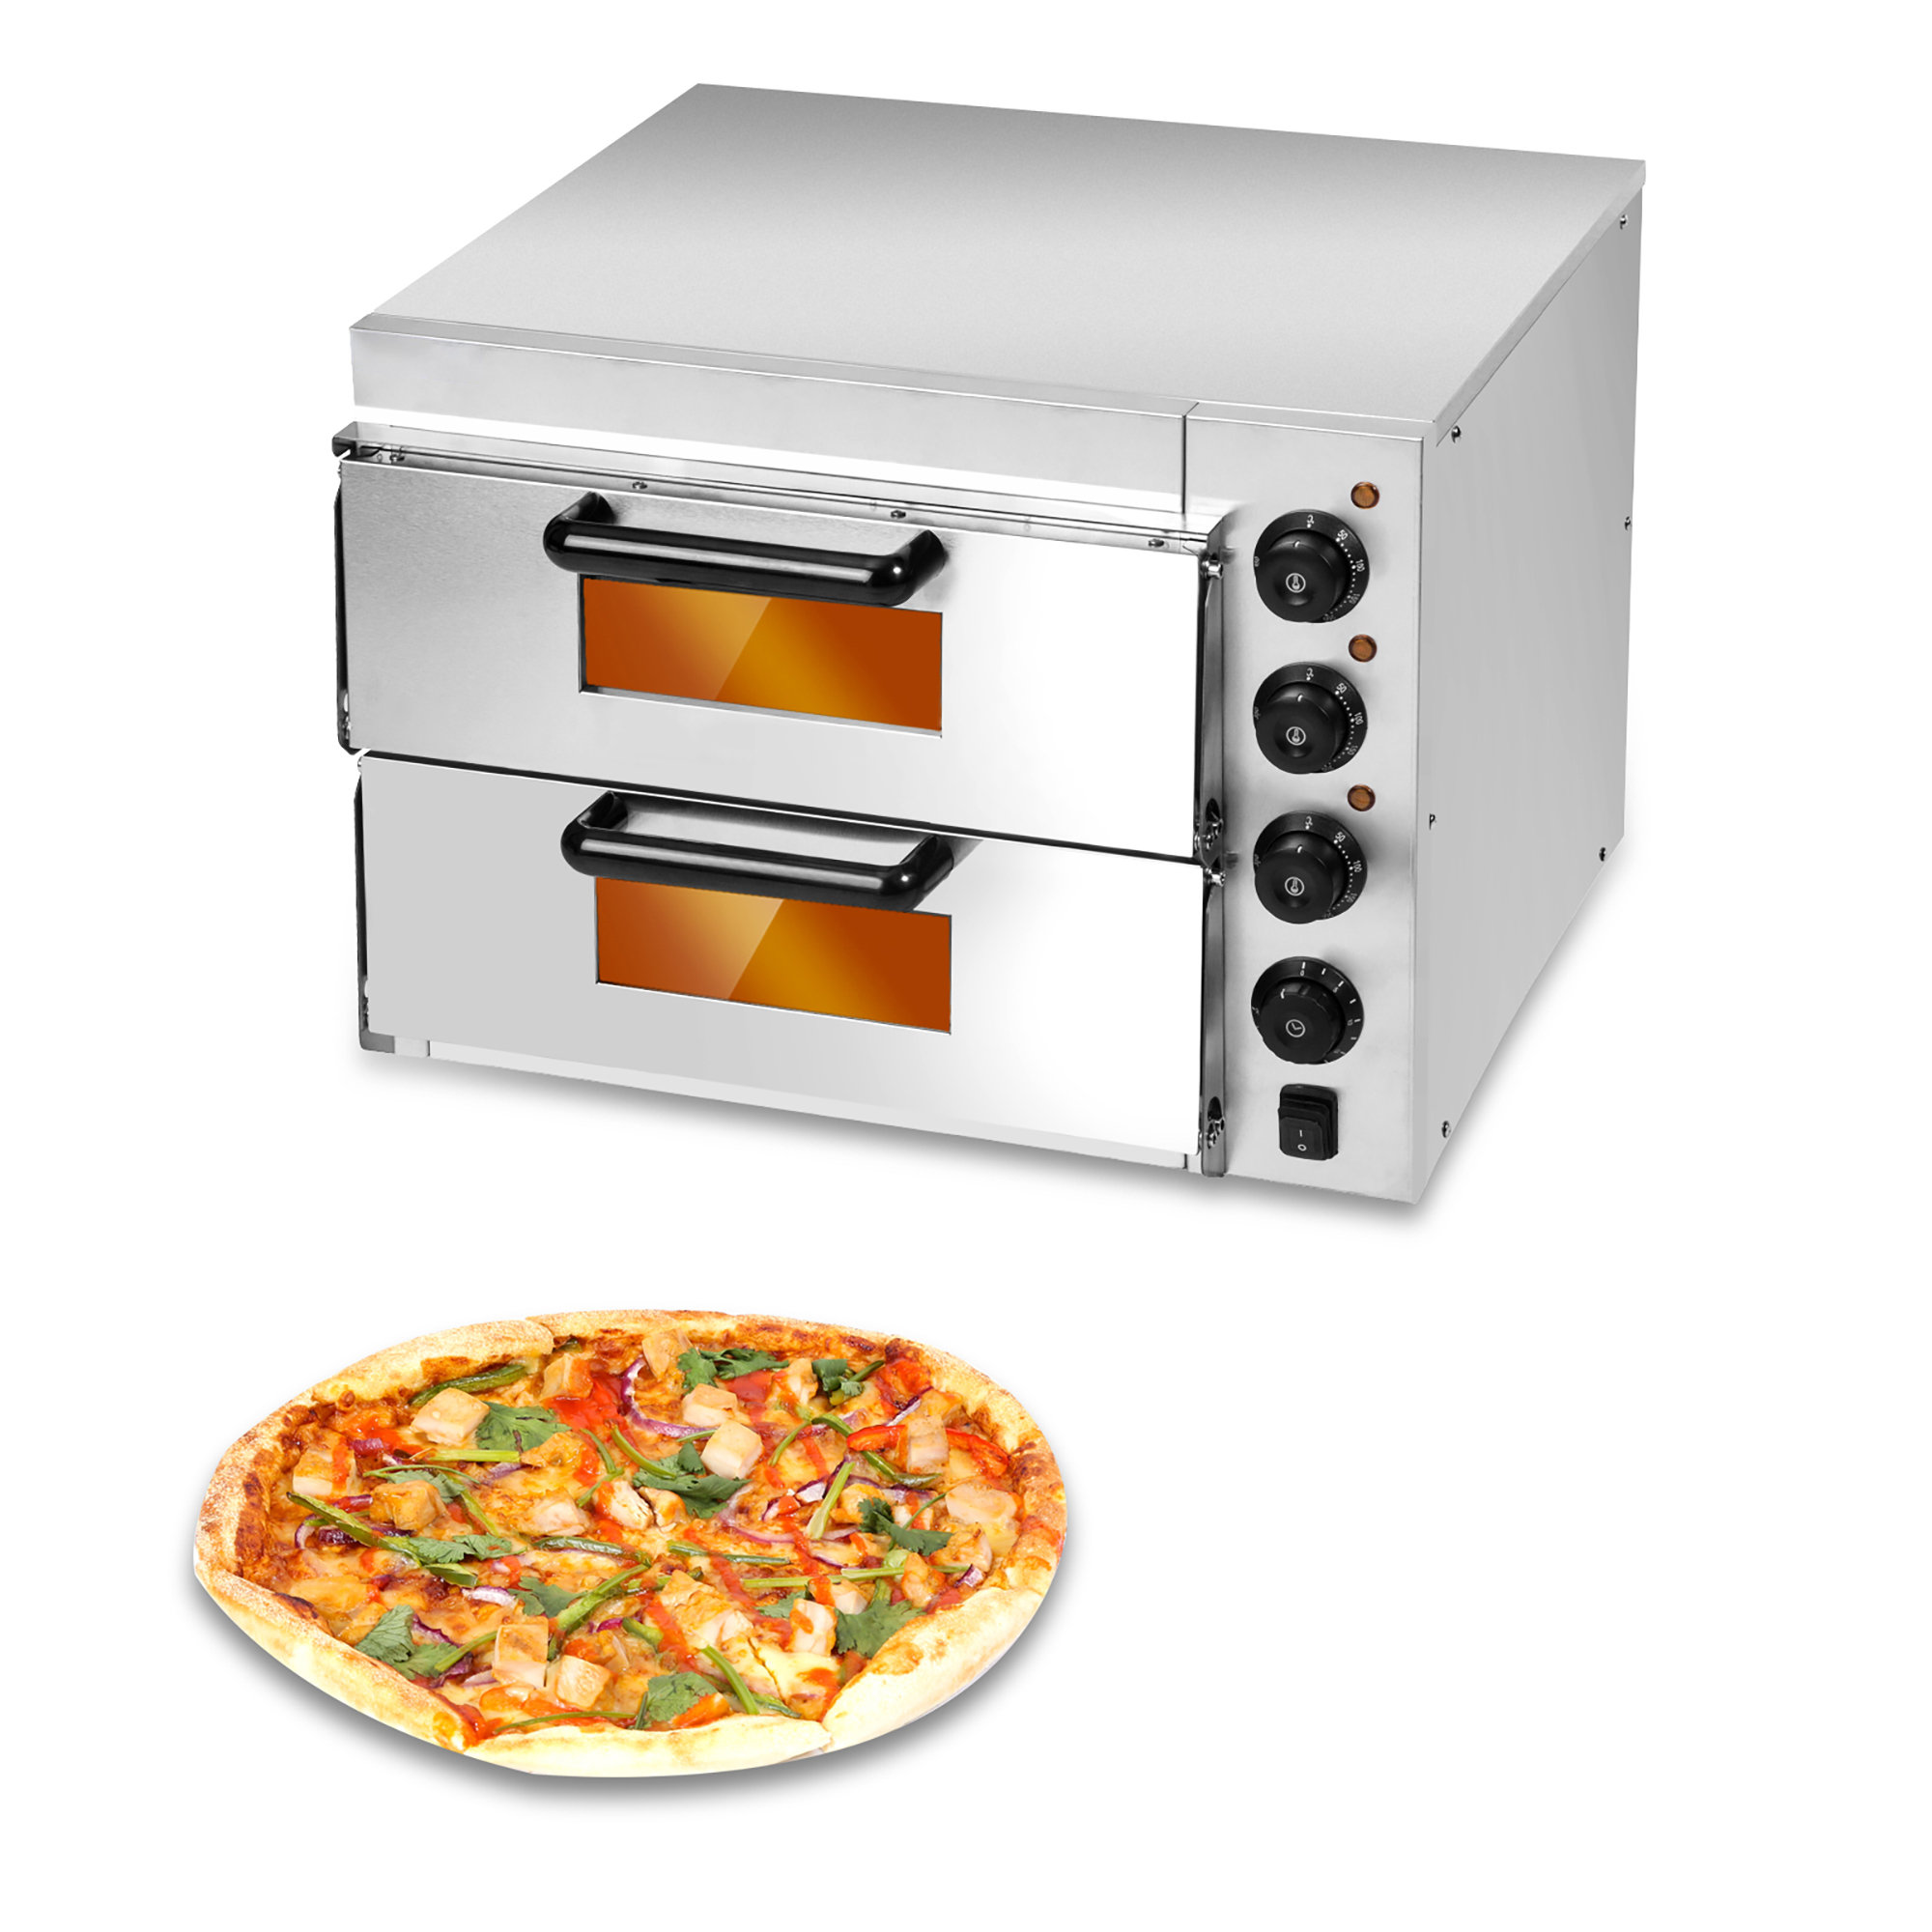 AiYchen Countertop Pizza Oven